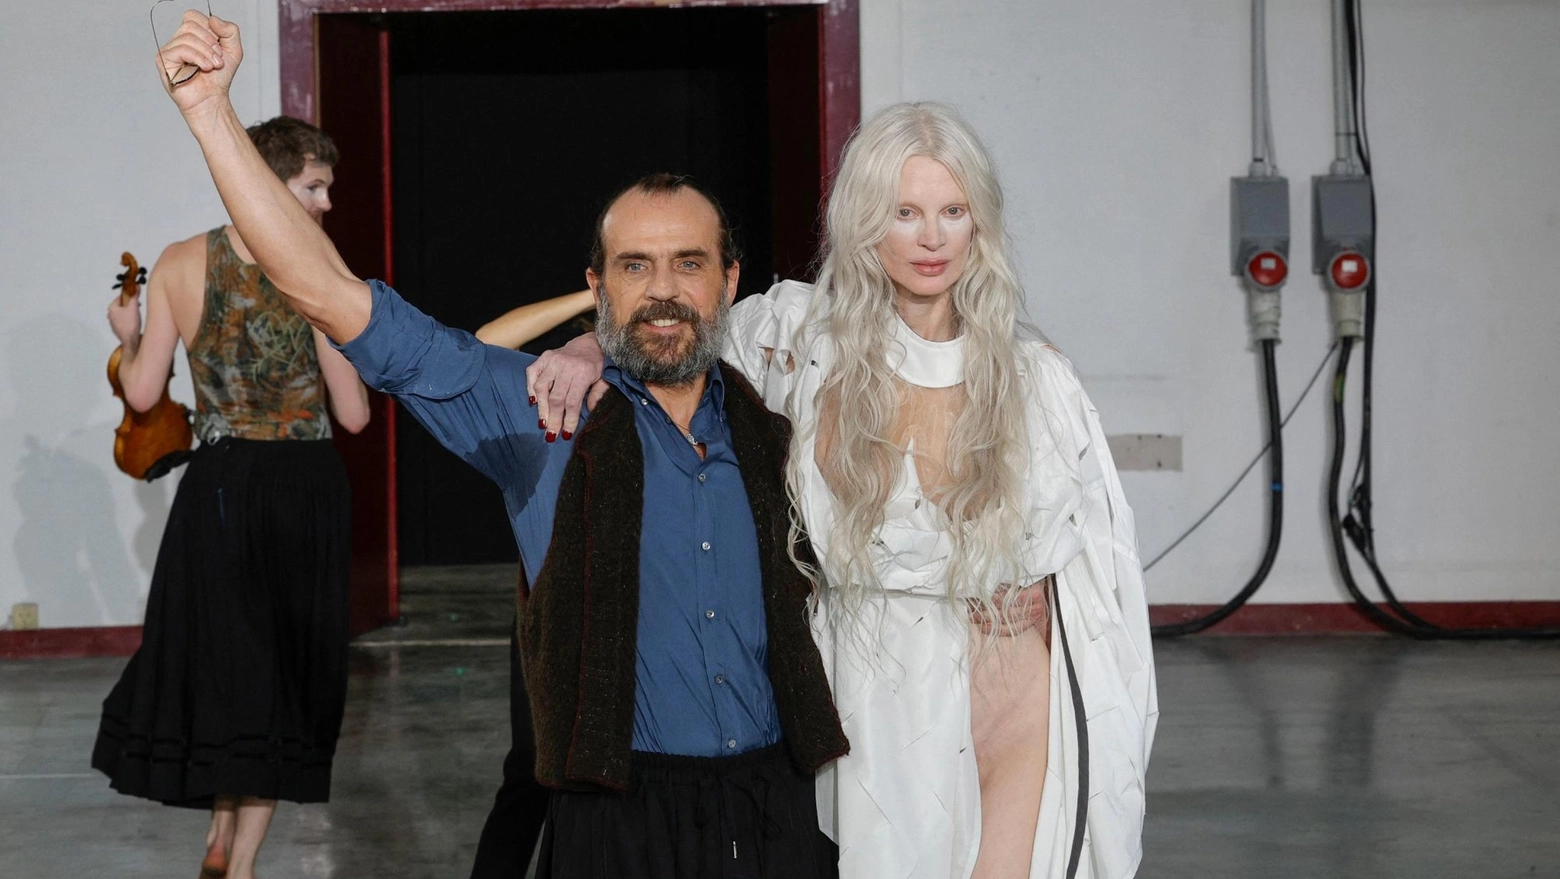 Andreas Kronthaler e la modella Kristen McMenamy alla fine della sfilata Vivienne Westwood di Parigi (Ansa)